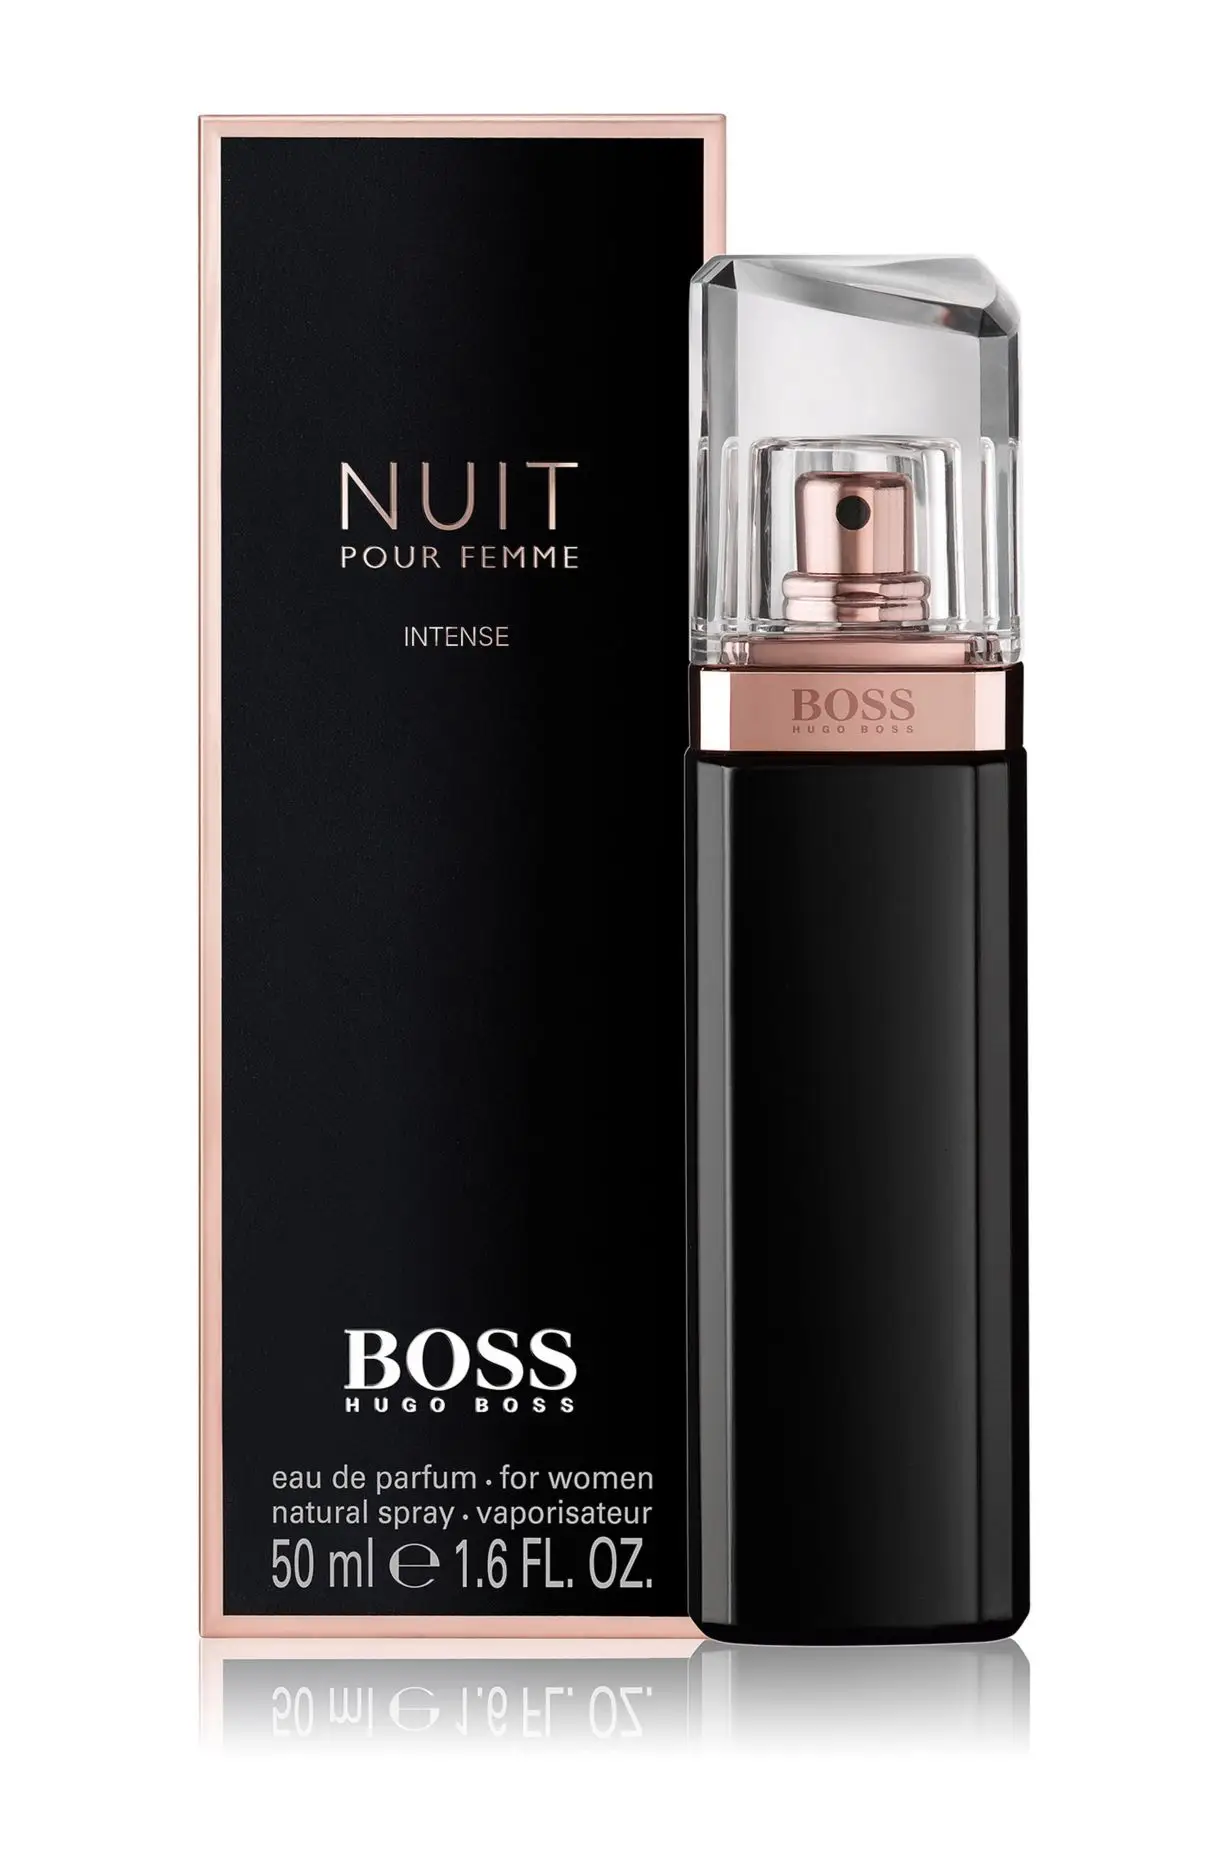 BOSS Eau de Parfum BOSS Nuit Intense 50 ml - Parfum Femme Hugo Boss